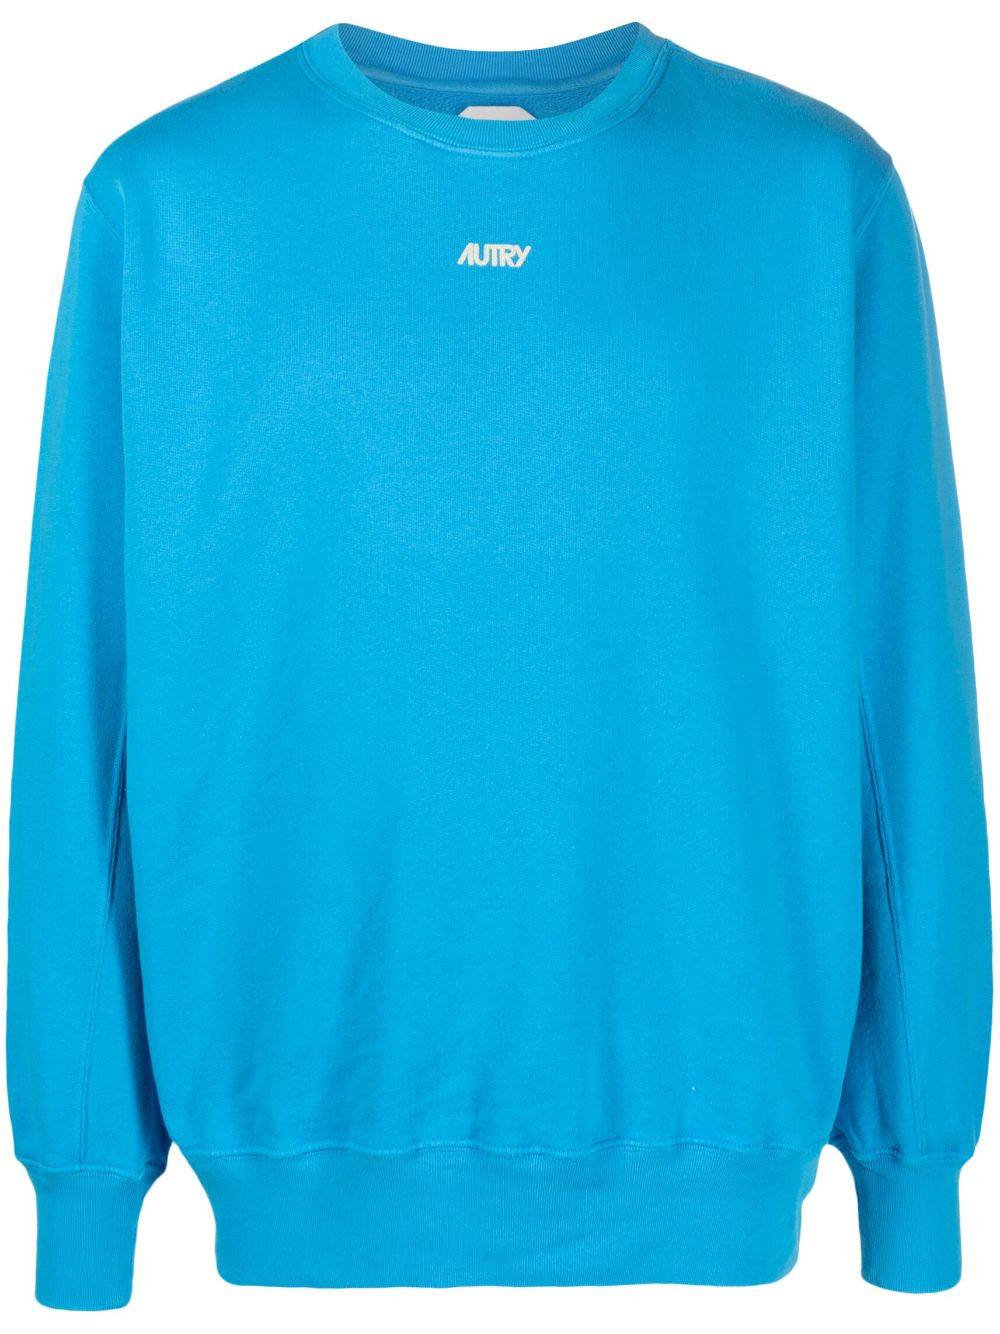 Autry Sweatshirt mit beflocktem Logo - Blau von Autry